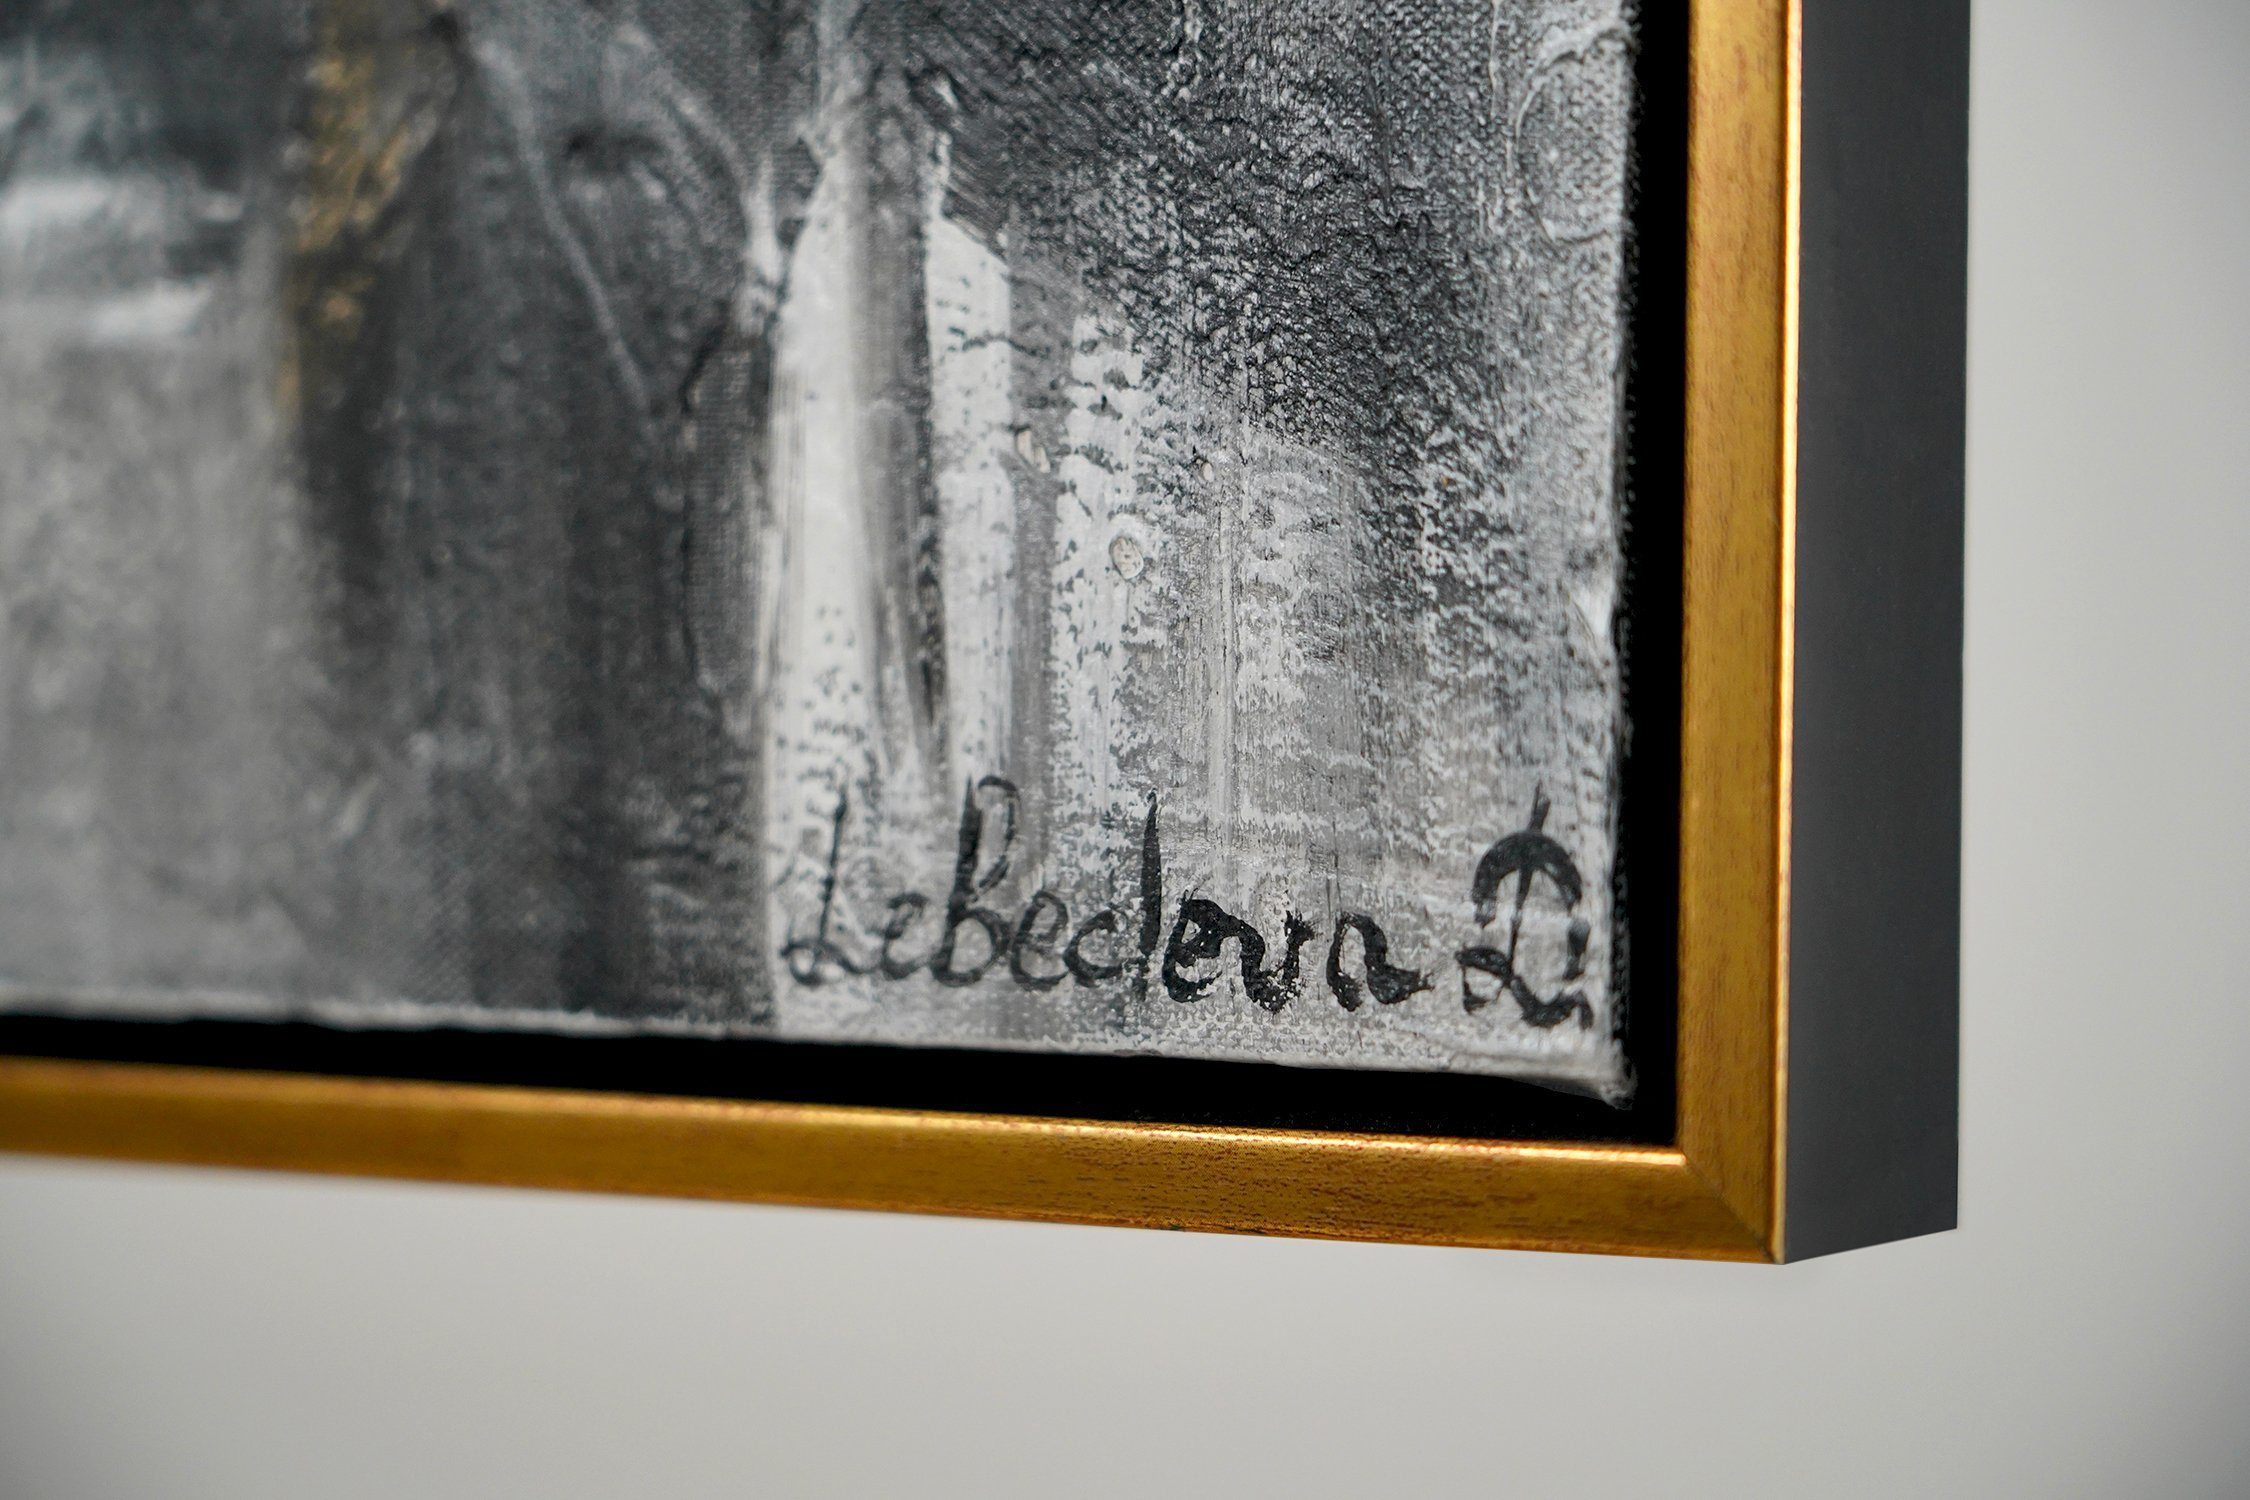 Gold Gold Schwarz Leinwand mit Frau Rahmen Bild Filmstreifen, Menschen, Gemälde Mit in Handgemalt YS-Art Schwarz Regenschirm